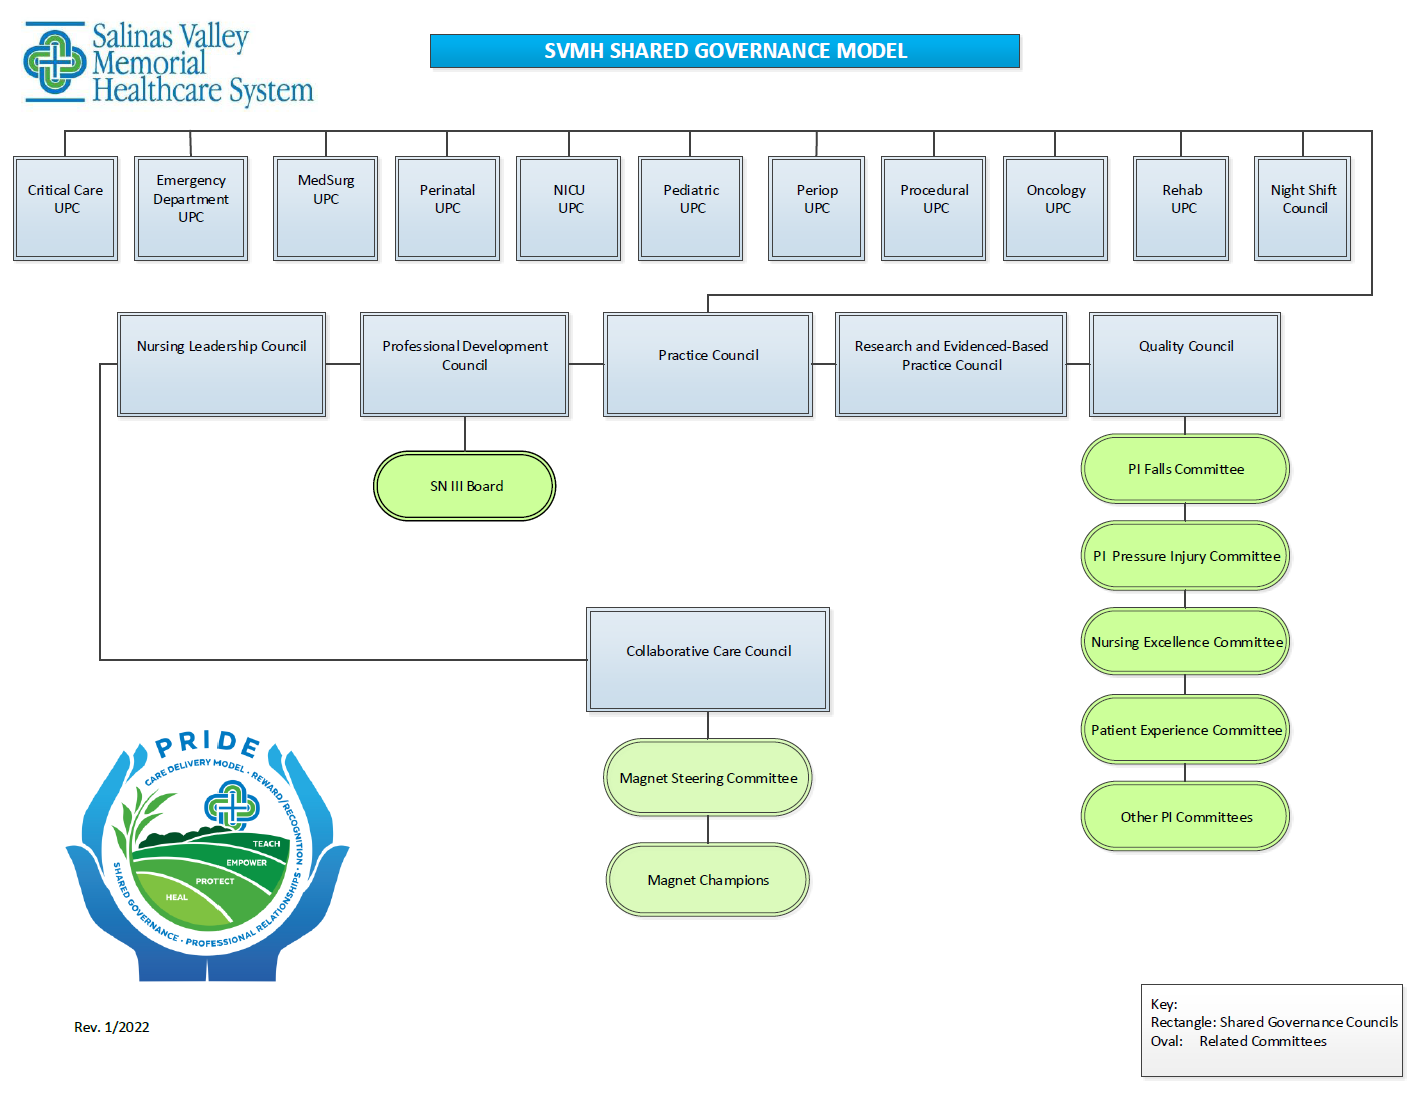 SVMHS Shared Governance Model